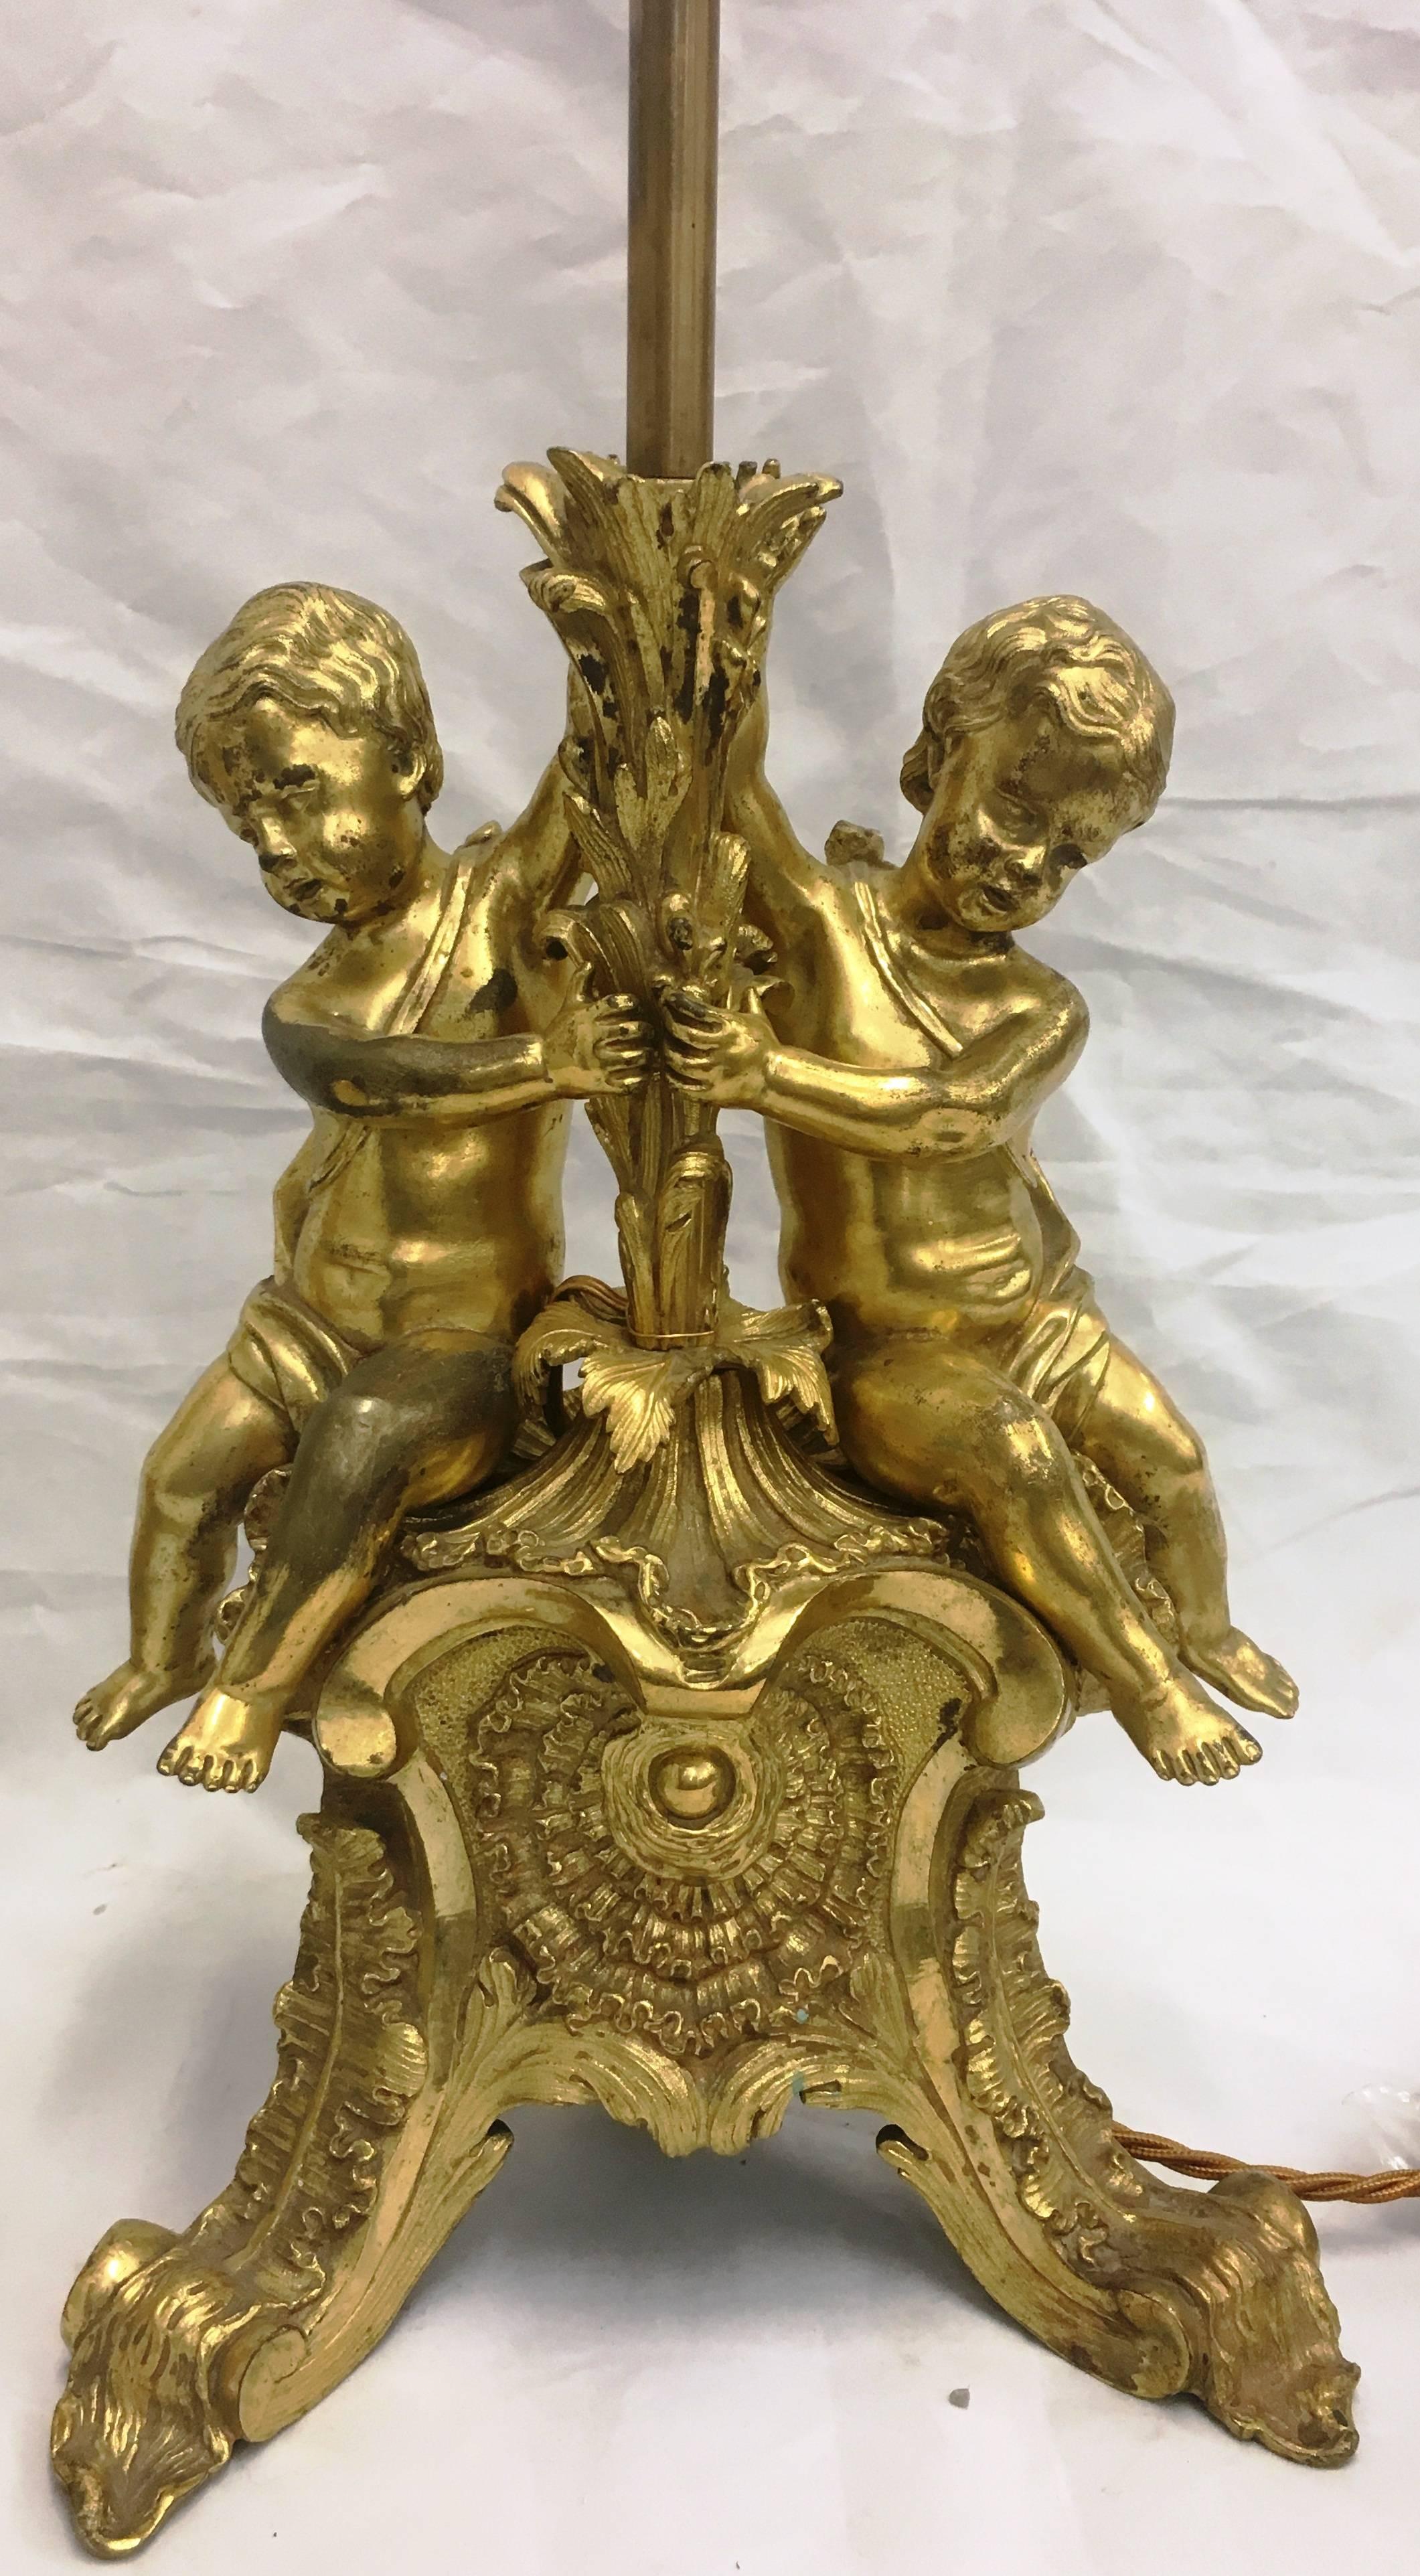 Une paire de lampes en bronze doré de bonne qualité, datant du 19ème siècle, chacune ayant deux putti assis sur une base feuillagée.